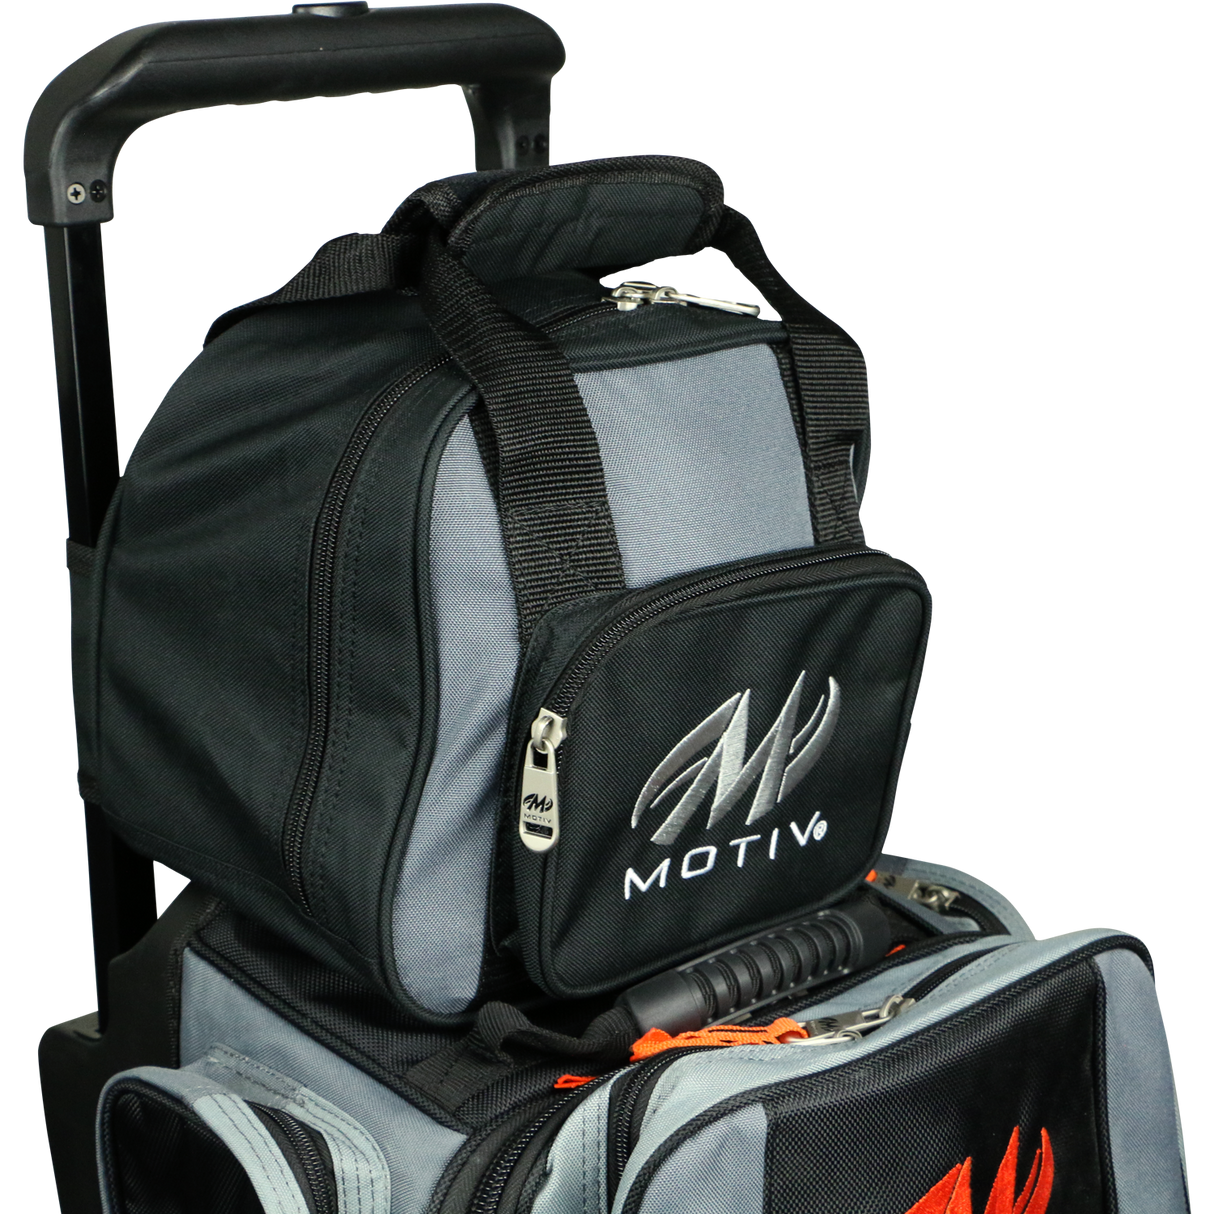 Motiv Splice Single Ball Attachment Bowling Bag suitcase league tournament play sale discount coupon online pba tour